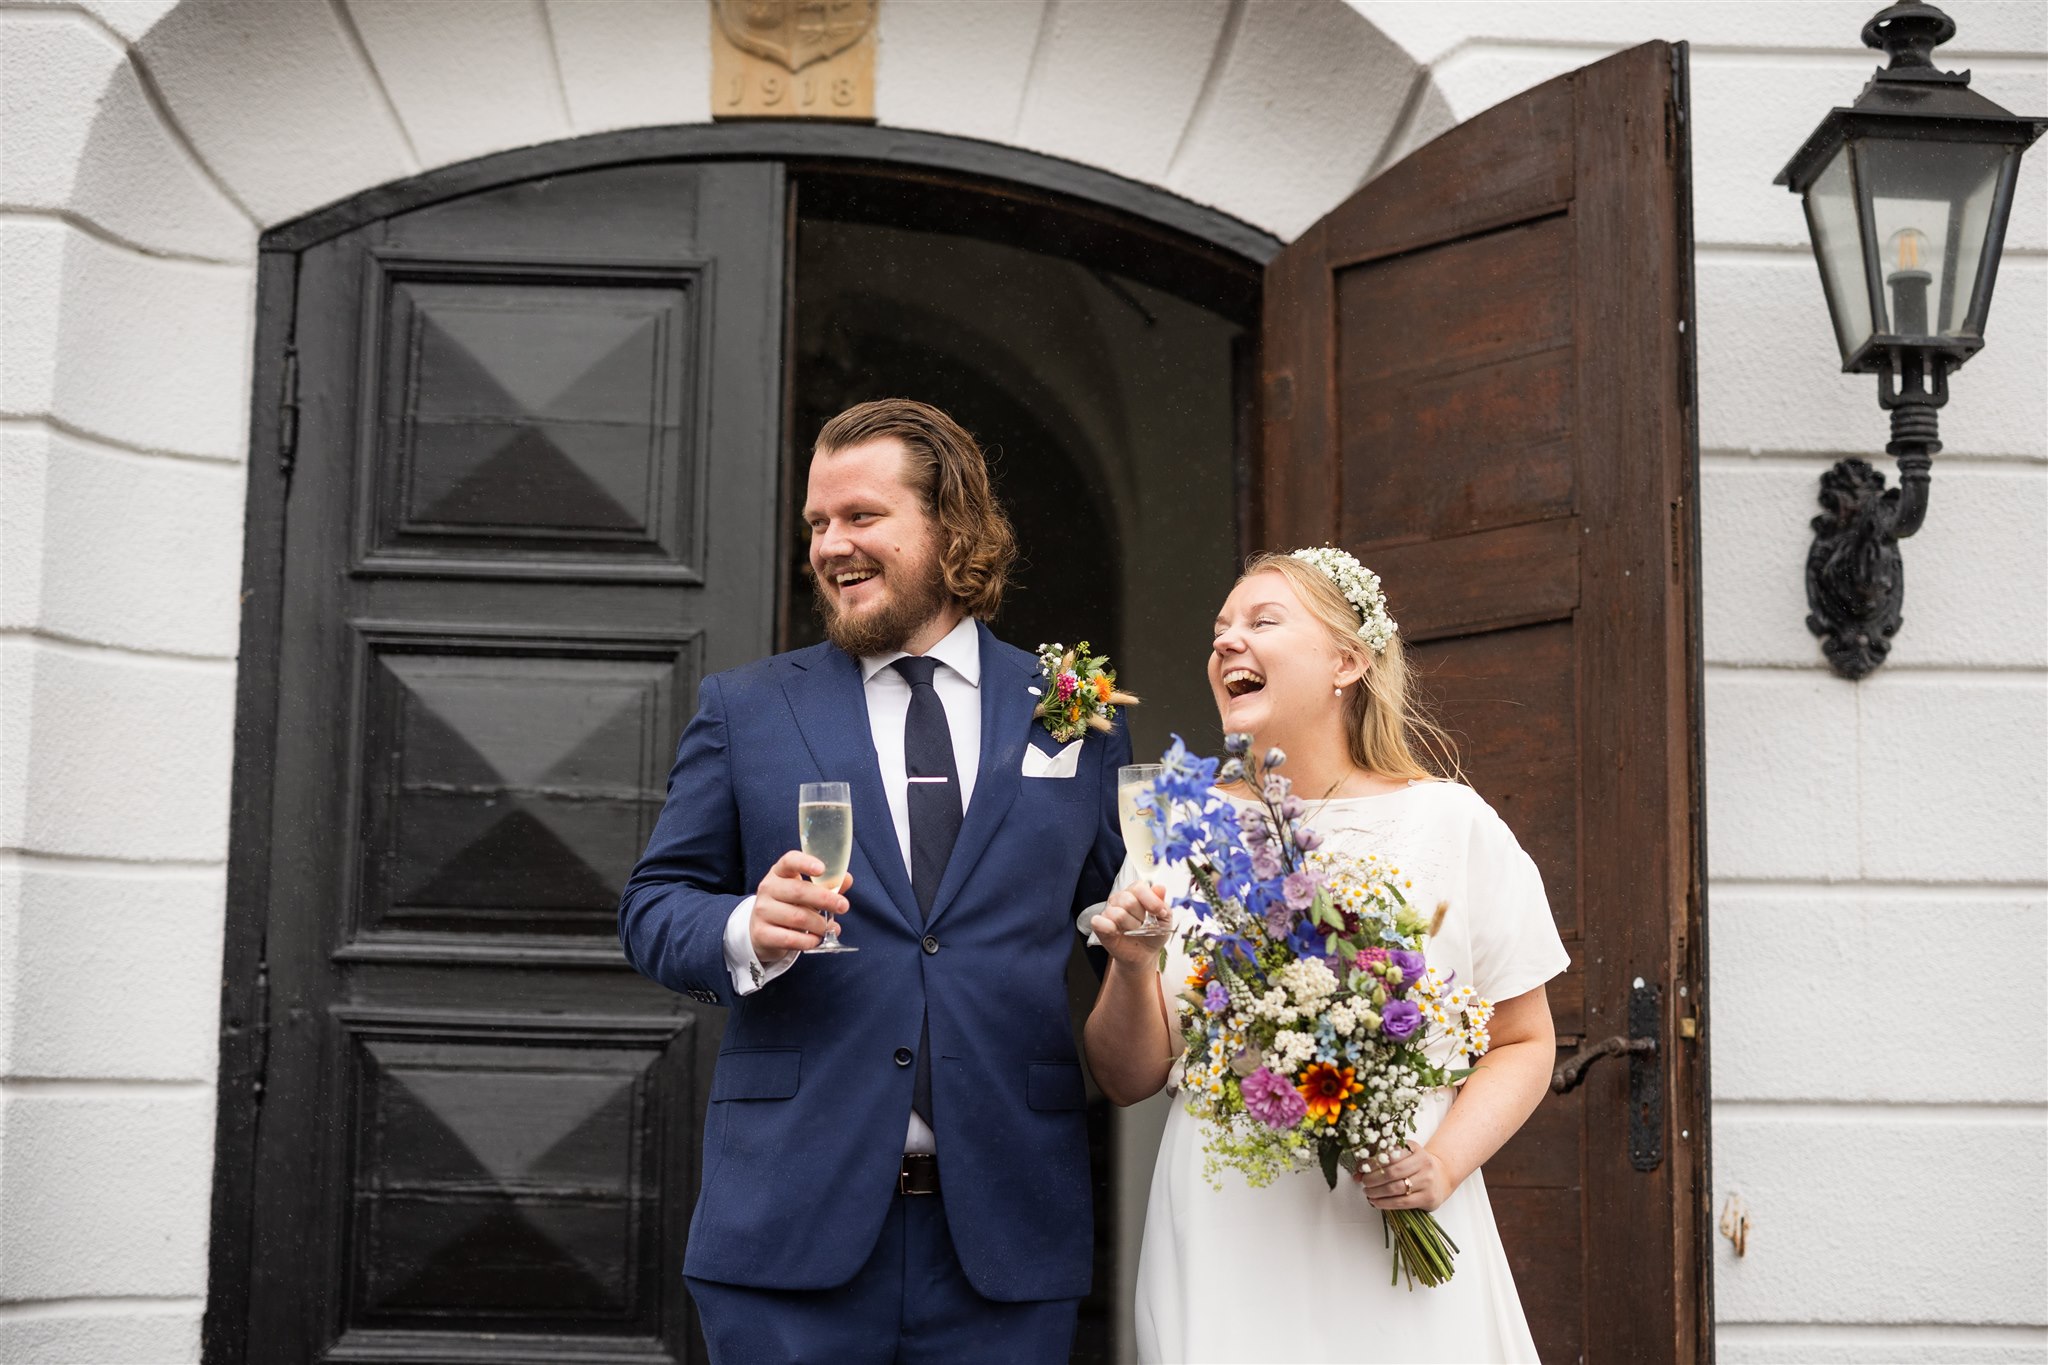 Brudskål under ett bröllop på Bjärsjölagårds slott i Skåne. Bröllopsfotograf är Tove Lundquist. Kostymen kommer från Pelote i Malmö och brudklänningen är sydd av Annika Karp i Lund, florist är Elins Blomsterglädje i Ystad.